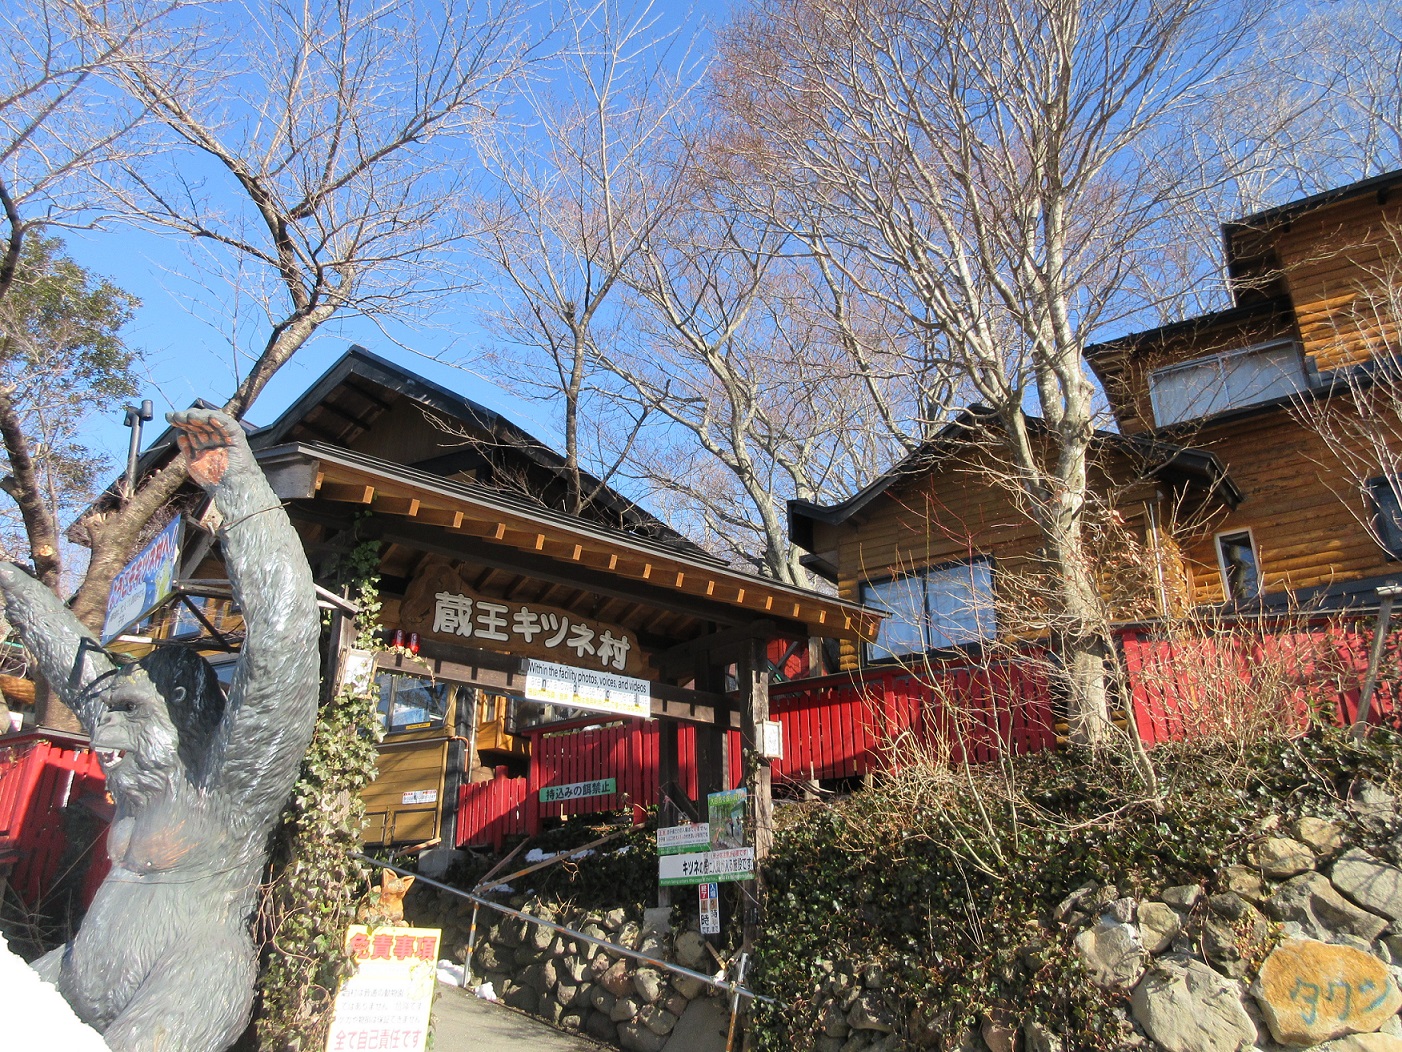 冬天被毛茸茸的狐狸們療癒吧！「宮城蔵王狐狸村」是個放養了100隻以上狐狸並能與狐狸近距離接觸日本國內少有的動物園。